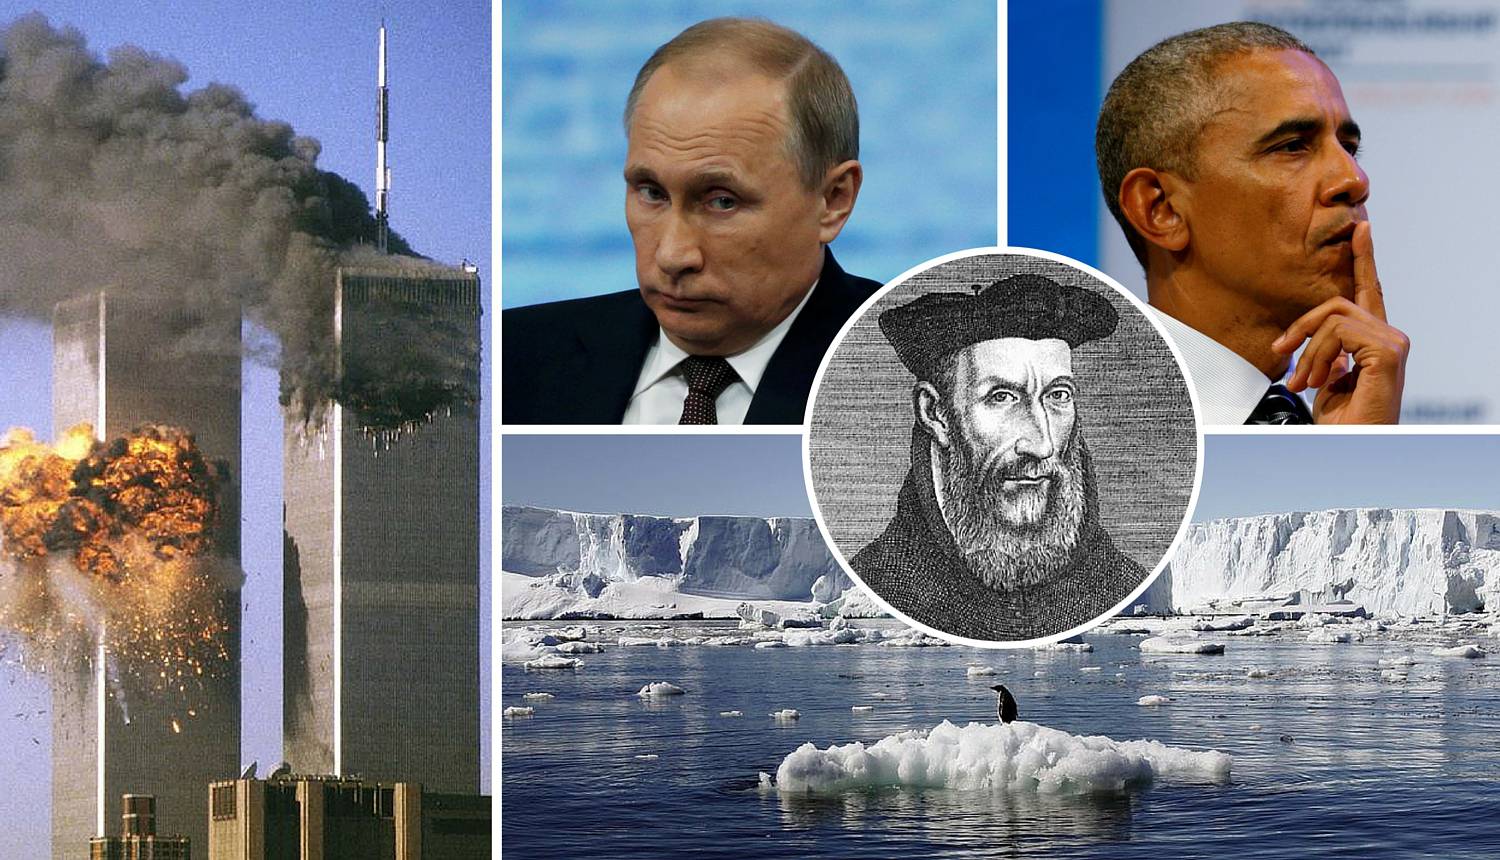 Rusija je faktor mira, a Obama 'zadnji američki predsjednik'